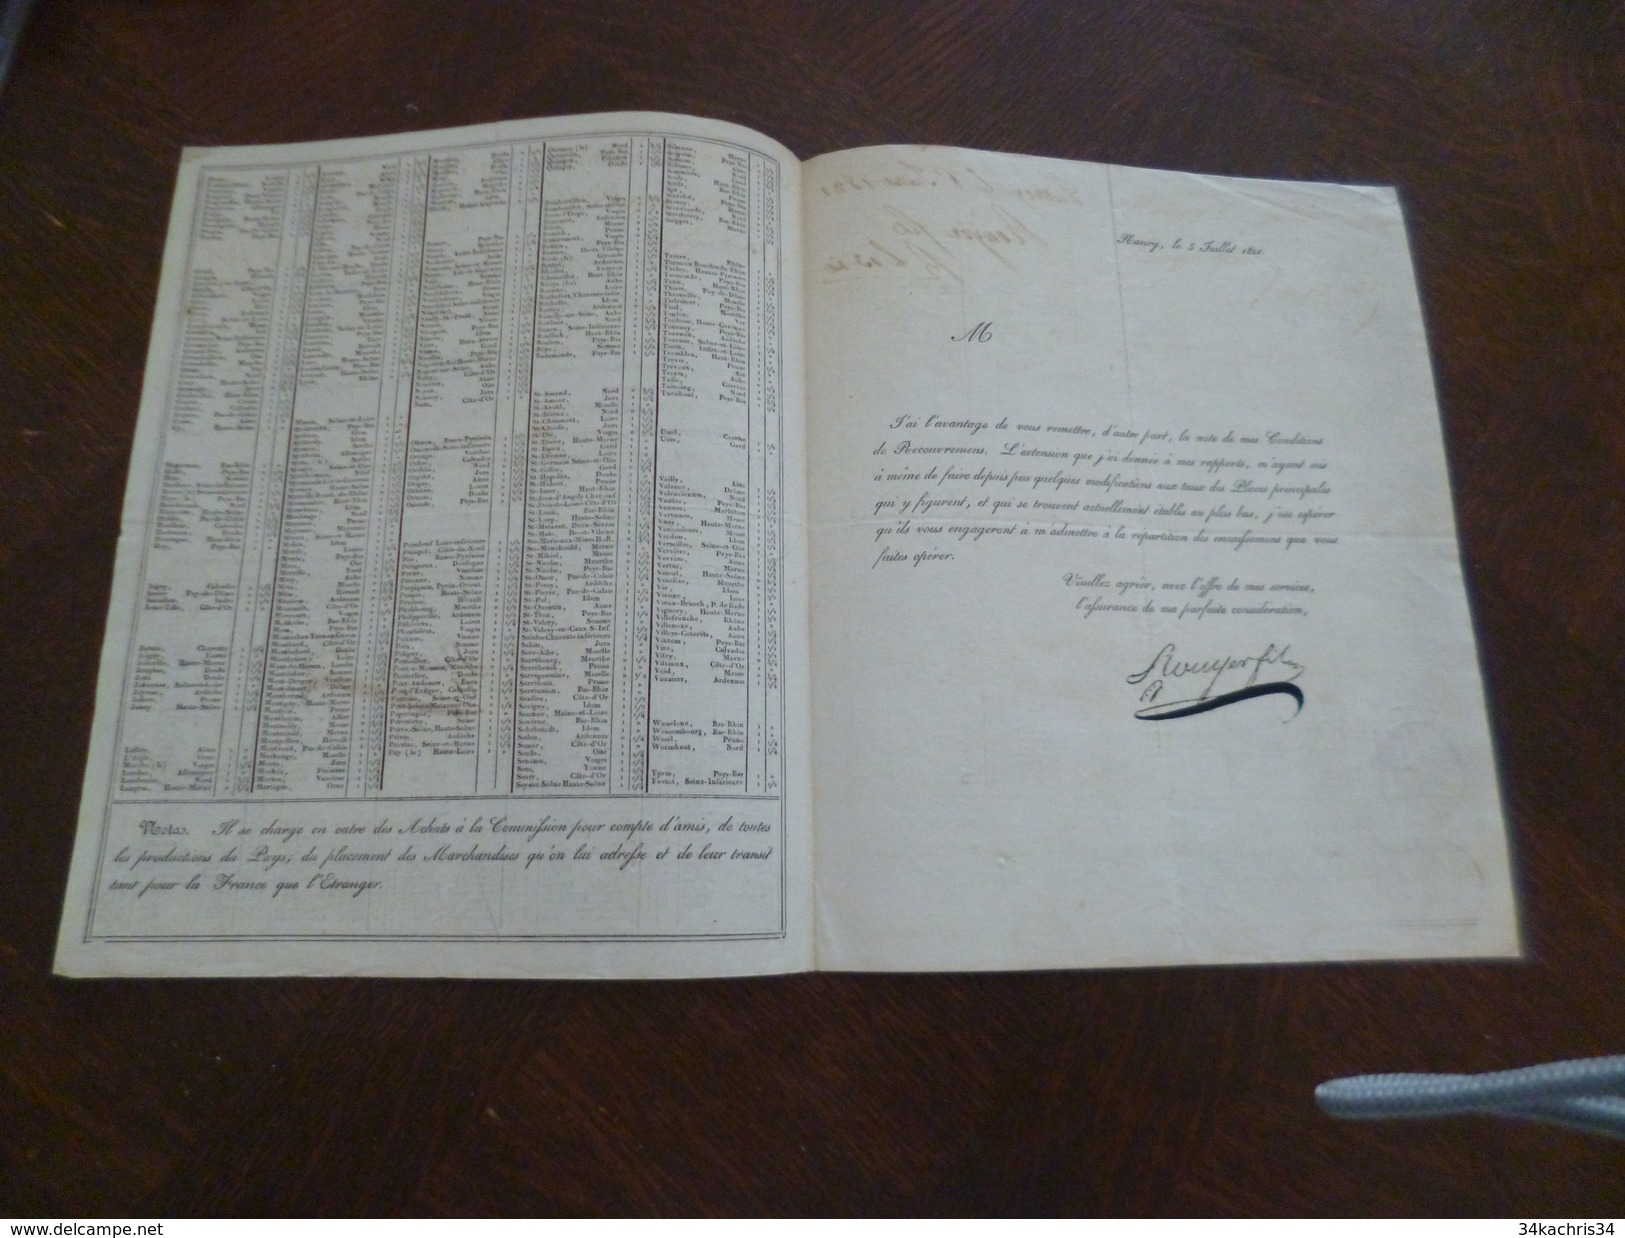 Conditions De Recouvrements De Rouilley Nancy 54 1821 Autographe - Bank & Insurance